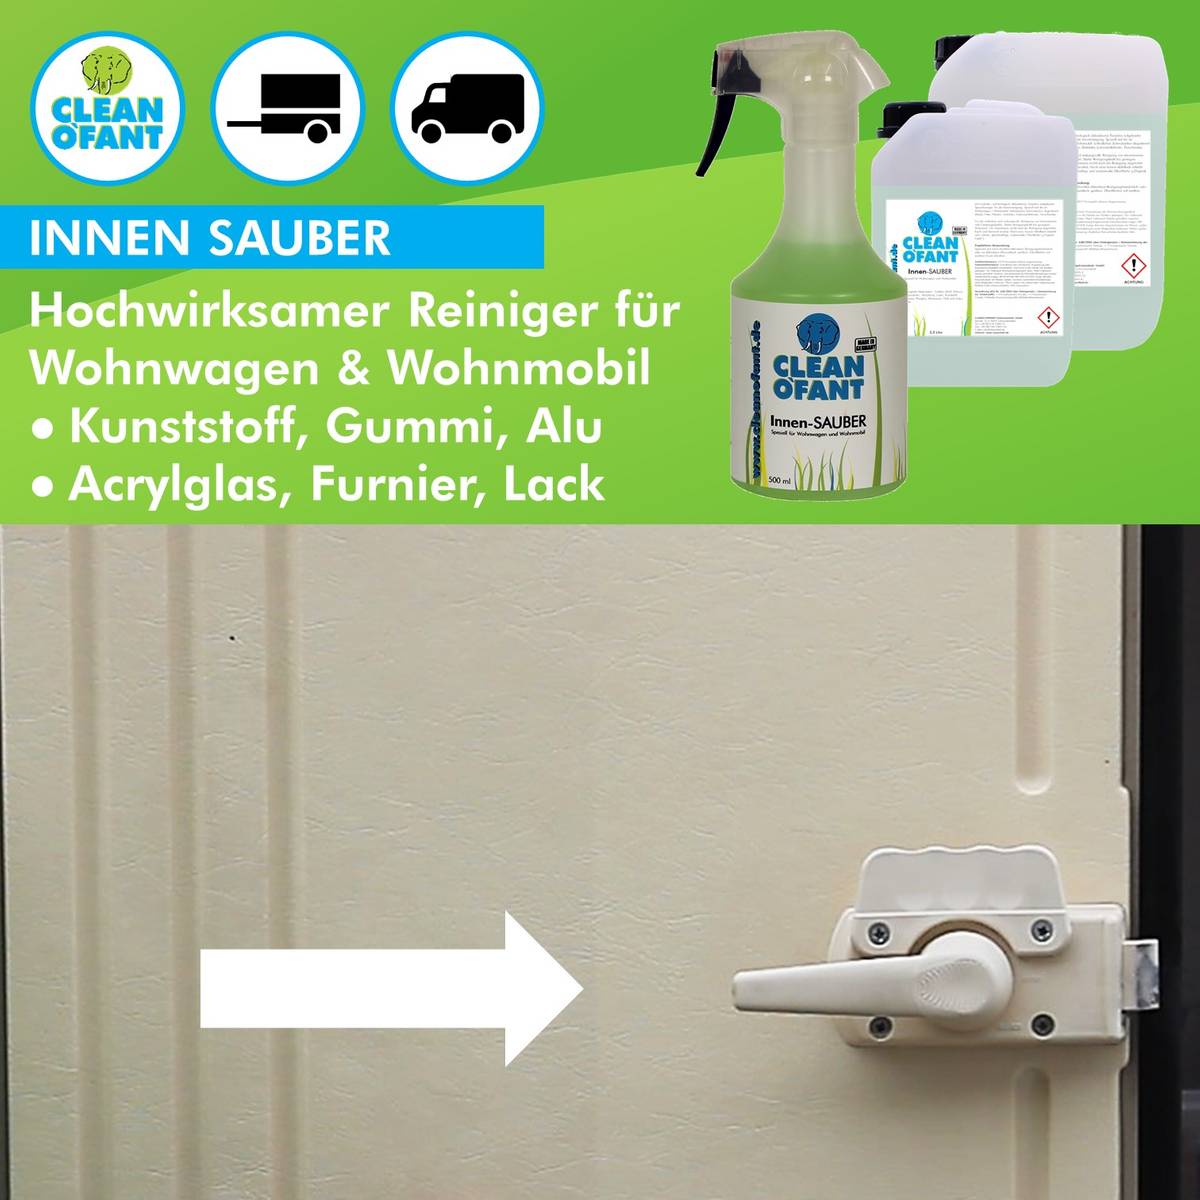 Innen-SAUBER (Innenreiniger) - 4,8 Liter - CLEANOFANT